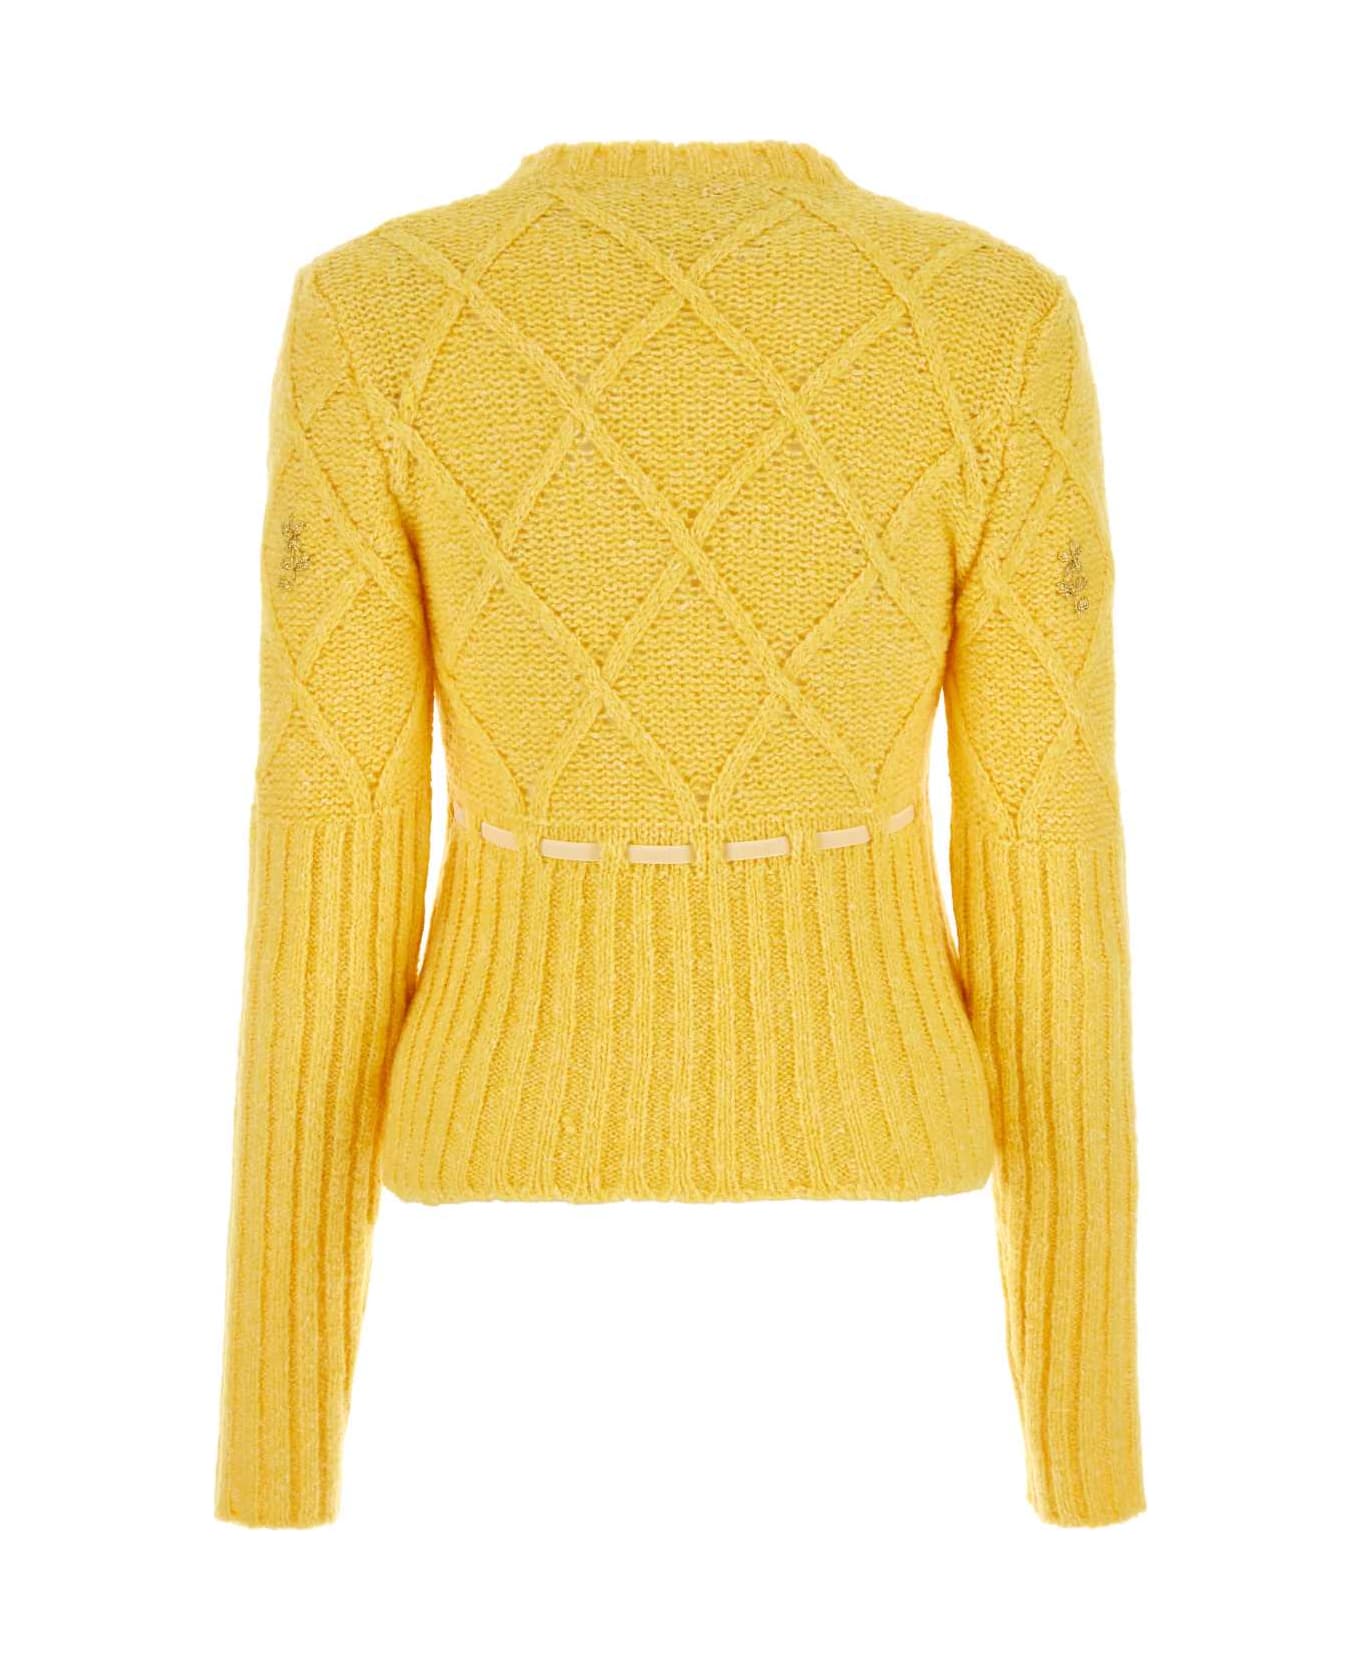 Cormio Yellow Wool Blend Sweater - YELLOW